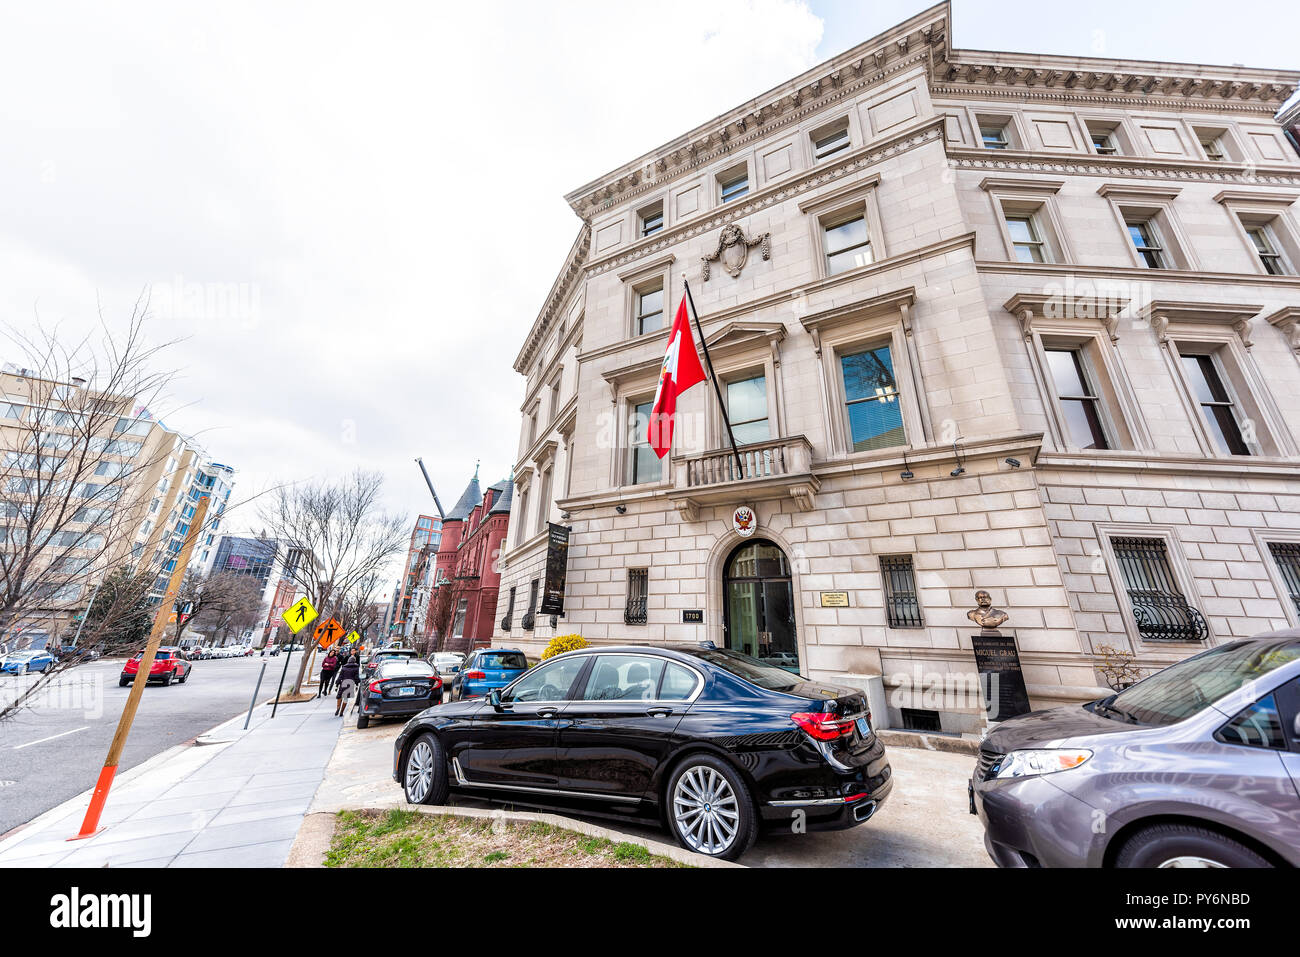 Washington DC, USA - 9 mars, 2018 : République du Pérou drapeau de la chancellerie par entrée dans la capitale, personne, bâtiment extérieur Banque D'Images